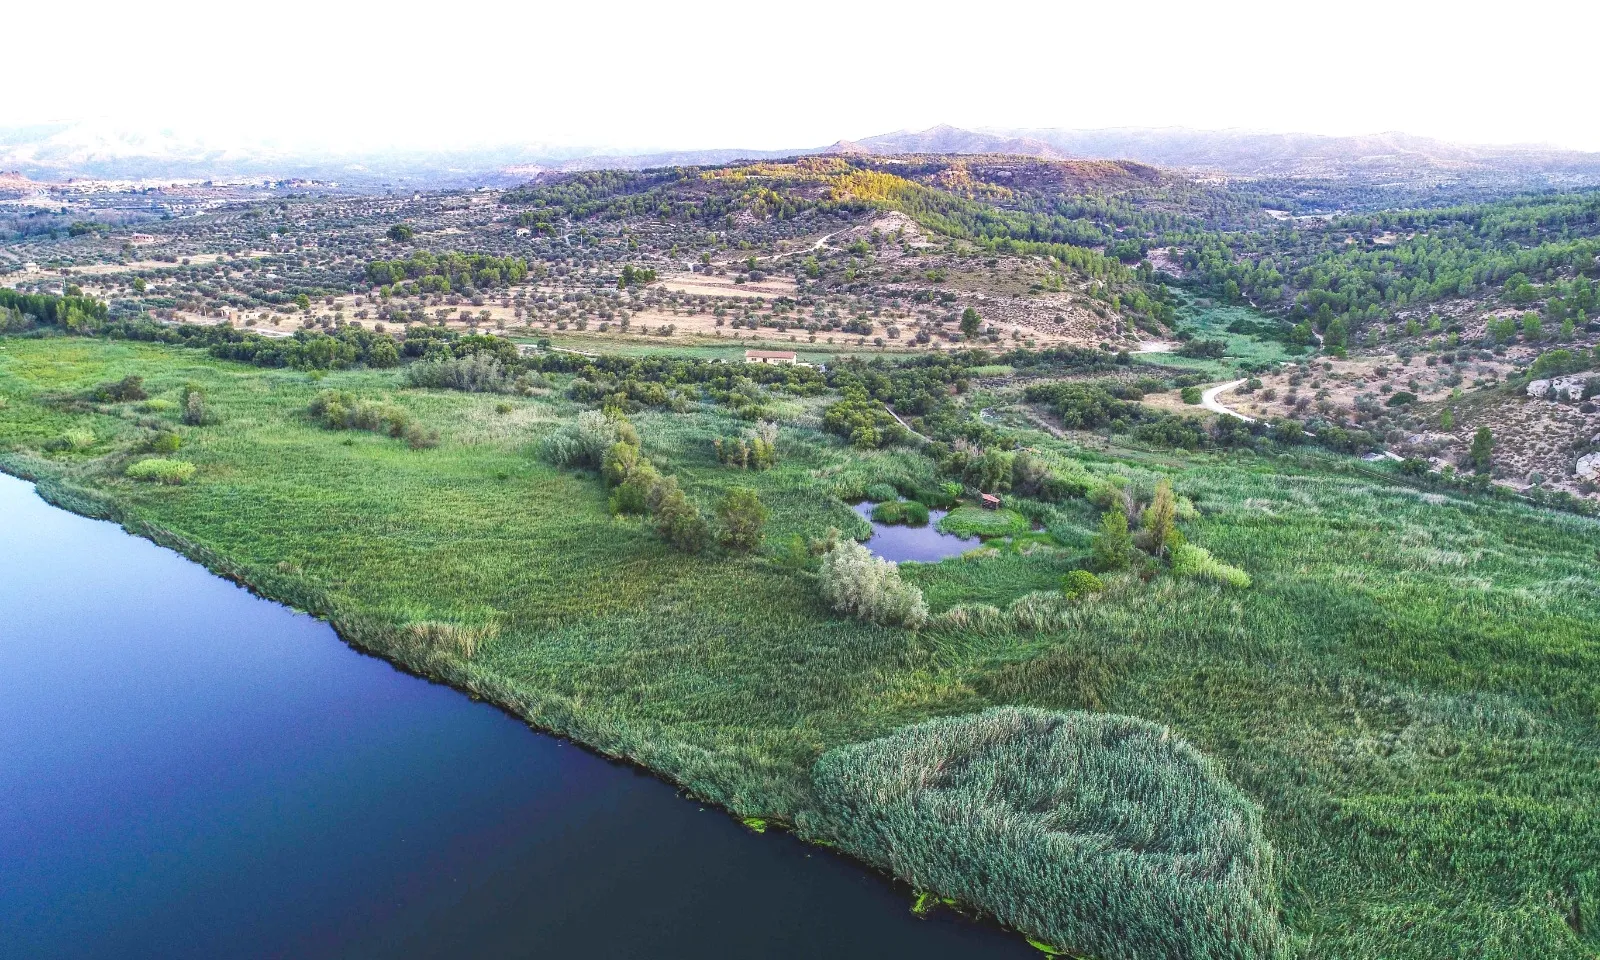 Amb la finalitat principal d’adaptar el tram final del riu Ebre al canvi climàtic, el Grup de Natura Freixe col·labora en el projecte ‘Fluviatilis'.